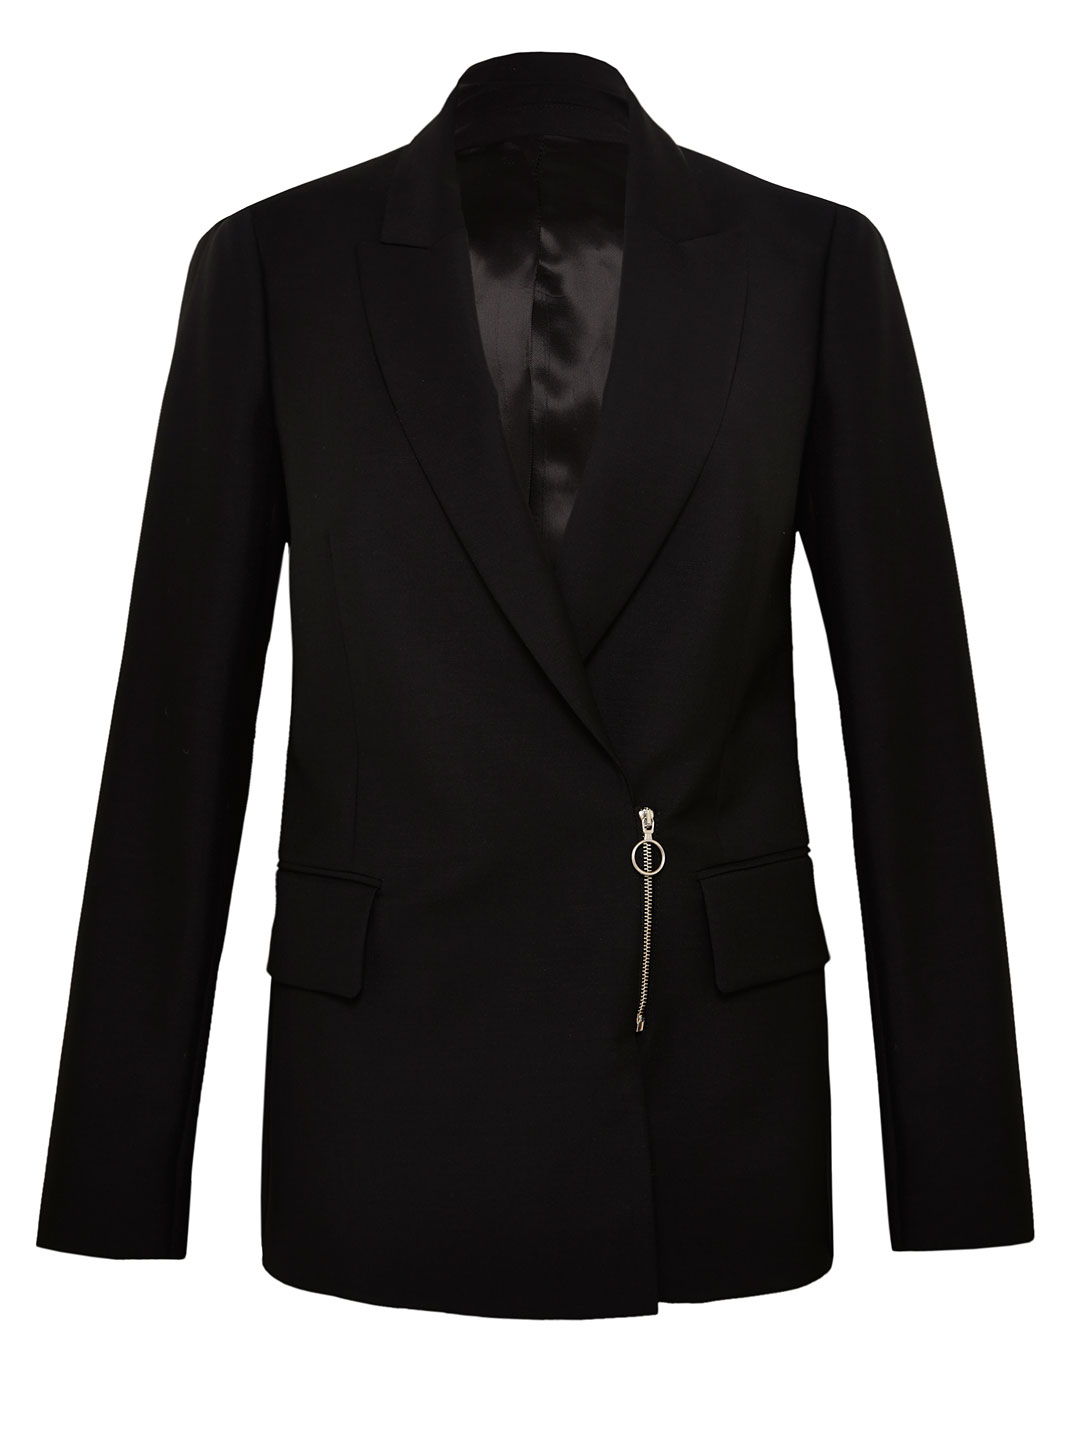 Lyst - Acne Studios Studios Womens Zip Front Blazer Jacket in Black